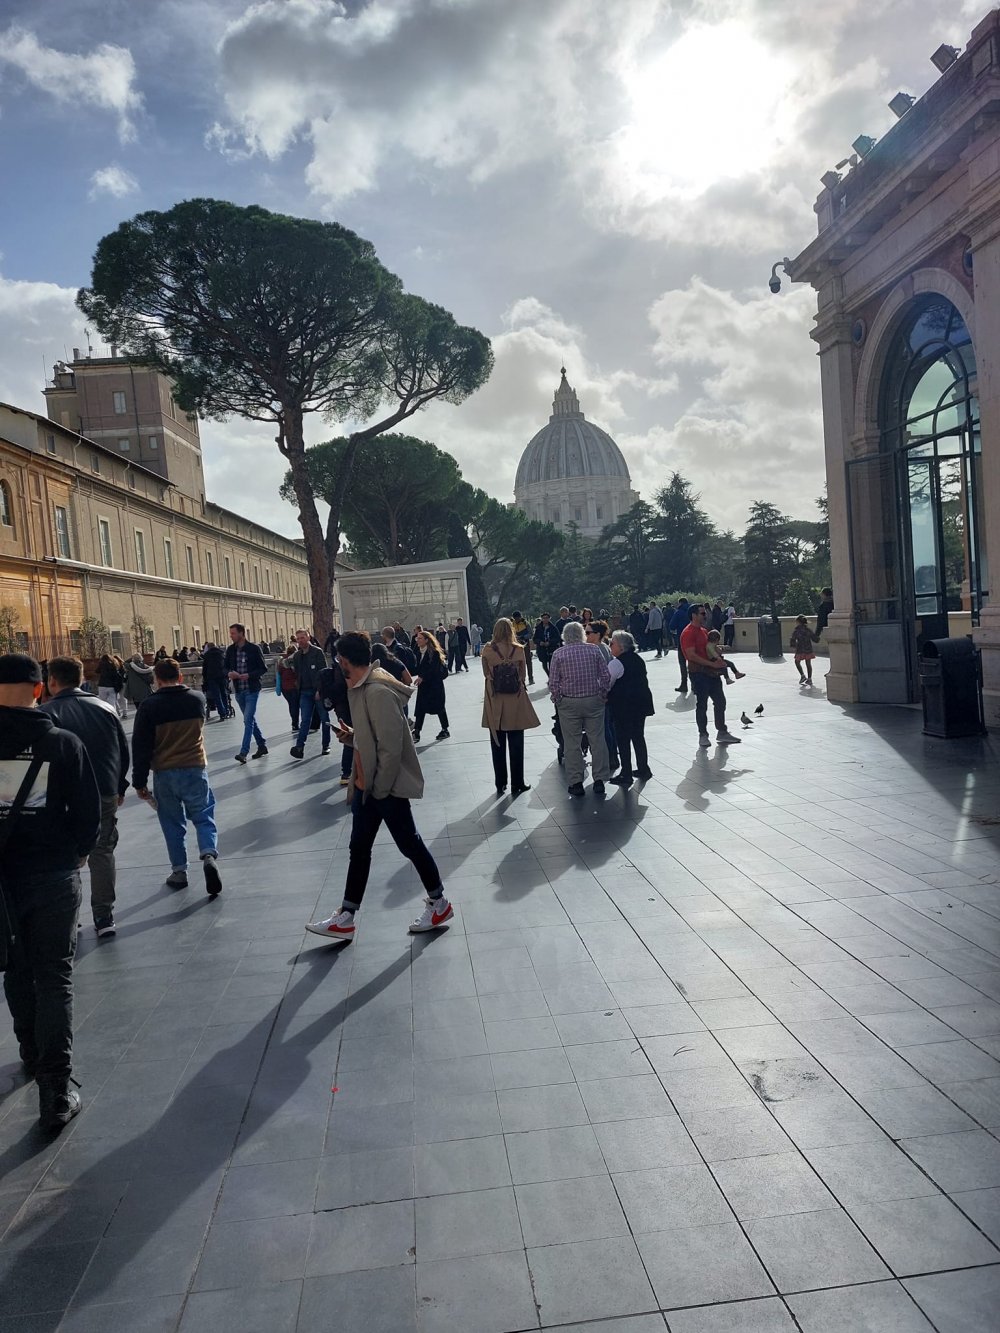 Νέα Κινητικότητα  Erasmus+ στη Ρώμη για σπουδαστές και προσωπικό του Ι.Ι.Ε.Κ της ΚΕΚΠΑ –ΔΙΕΚ του Δήμου  Βόλου 